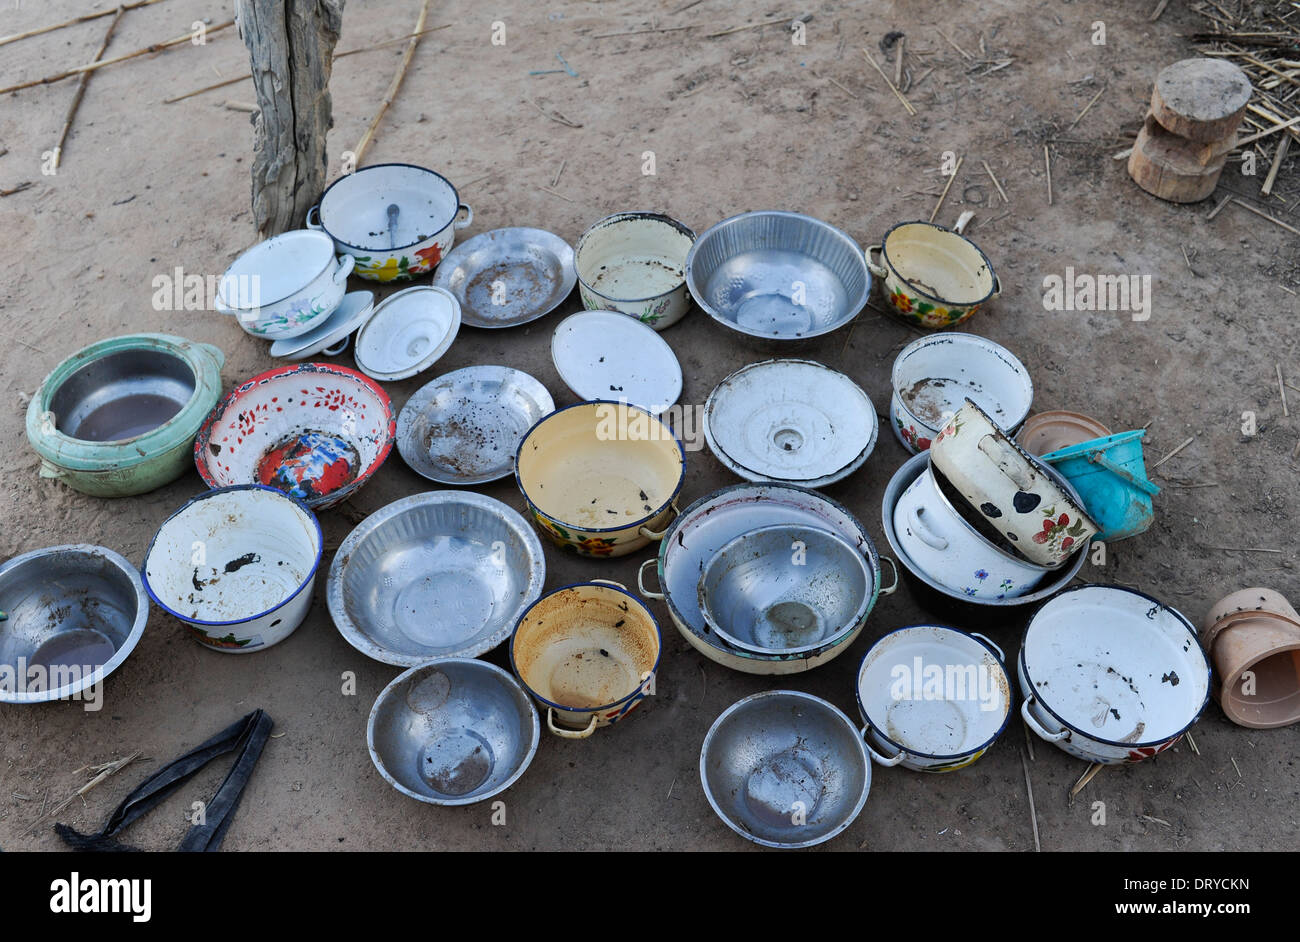 BURKINA FASO Kaya, la faim, bateaux vides dans village Banque D'Images